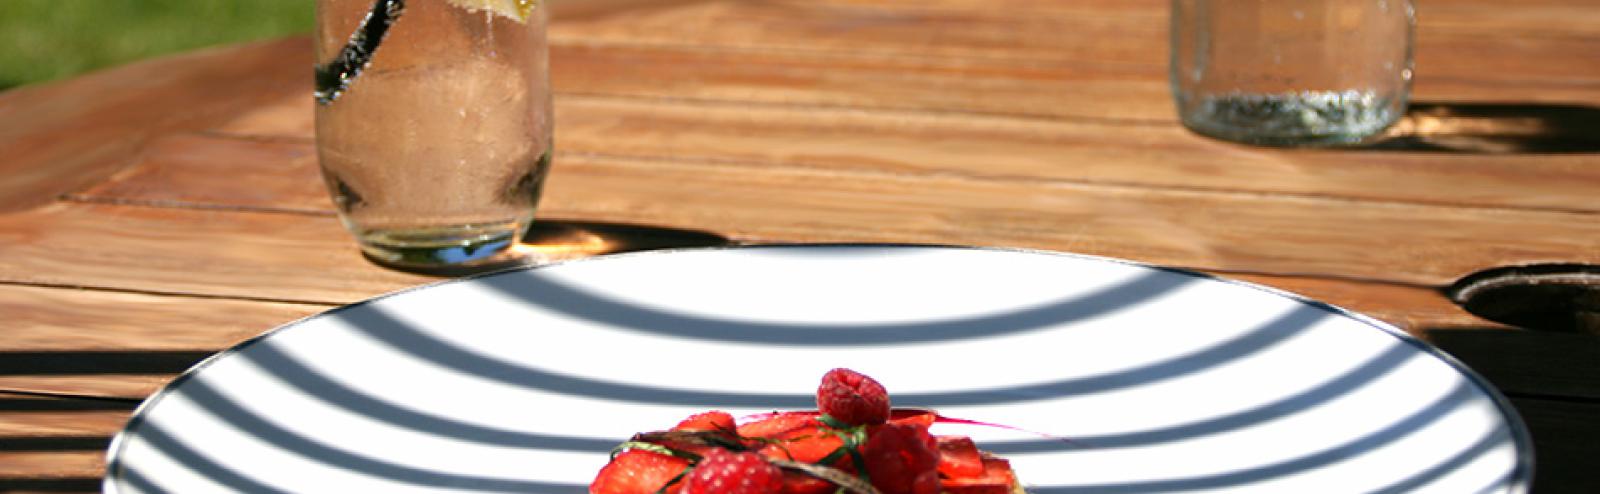 Recette compotée de rhubarbe aux fraises, recette chef cuisinier